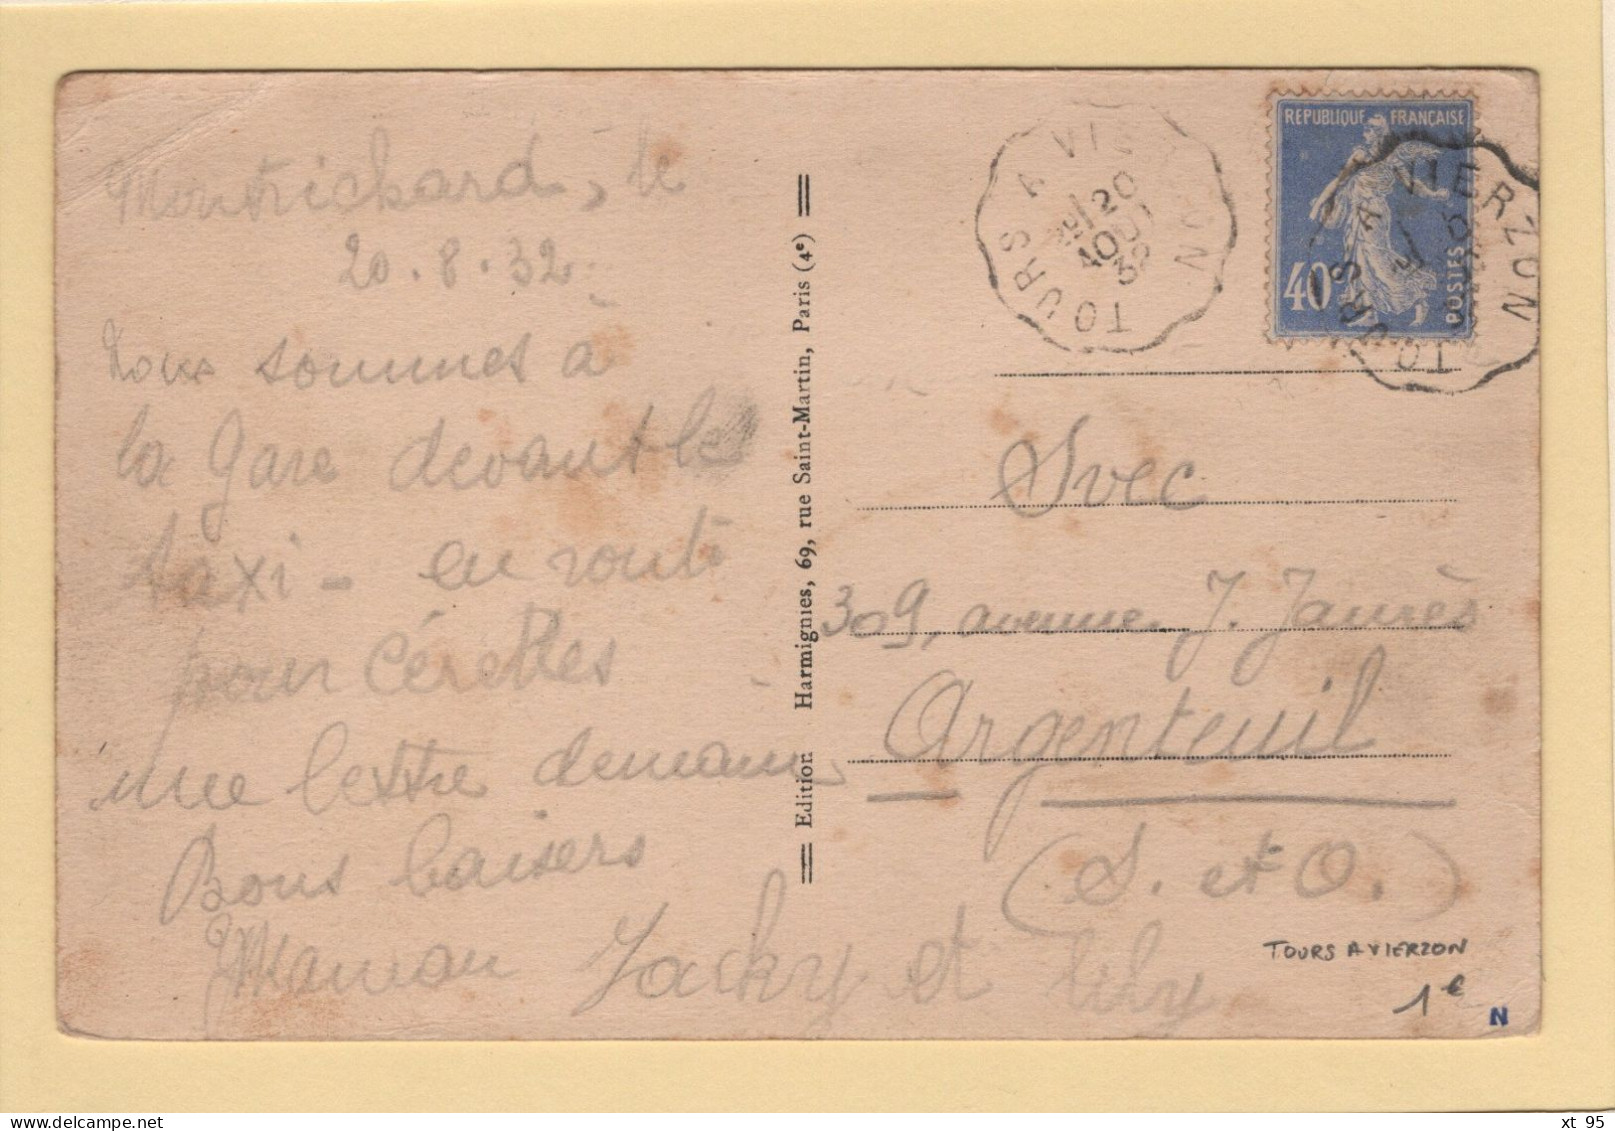 Convoyeur Tours A Vierzon - 1932 - Railway Post